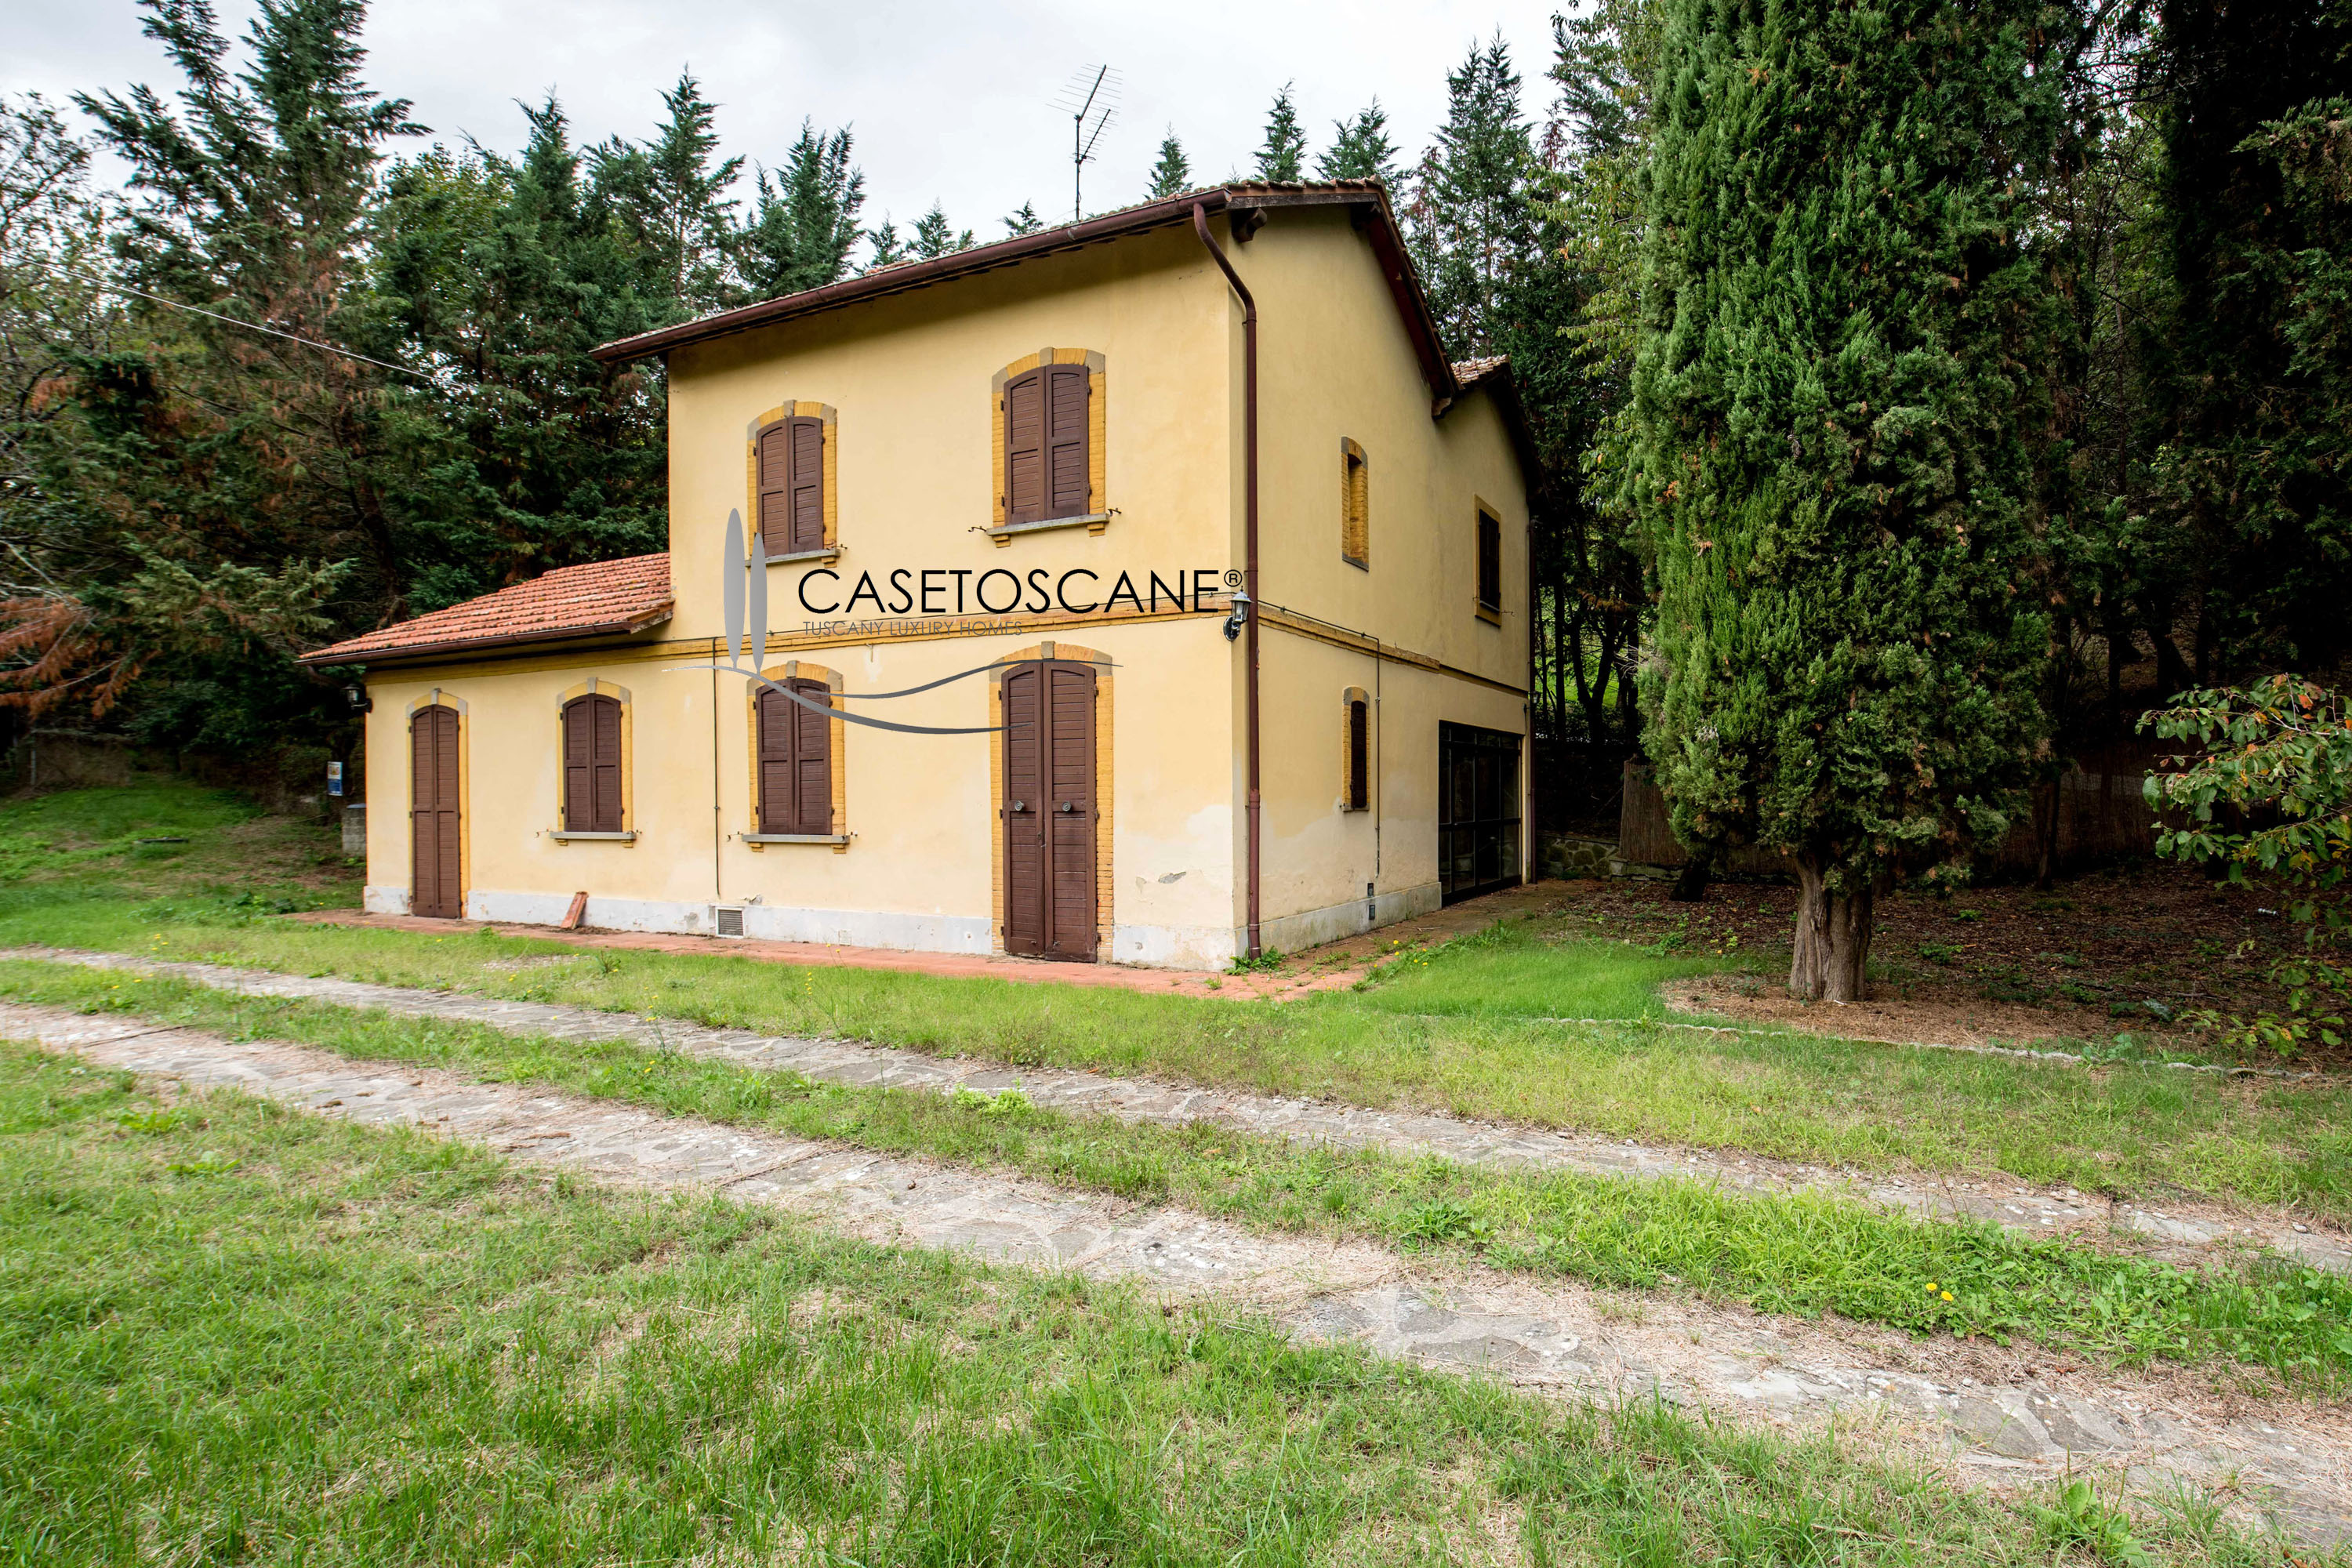 S197 - Immobile unico: ex casello ferroviario trasformato in abitazione di mq.160, parco di mq.4.500 con galleria, nelle colline di Arezzo.